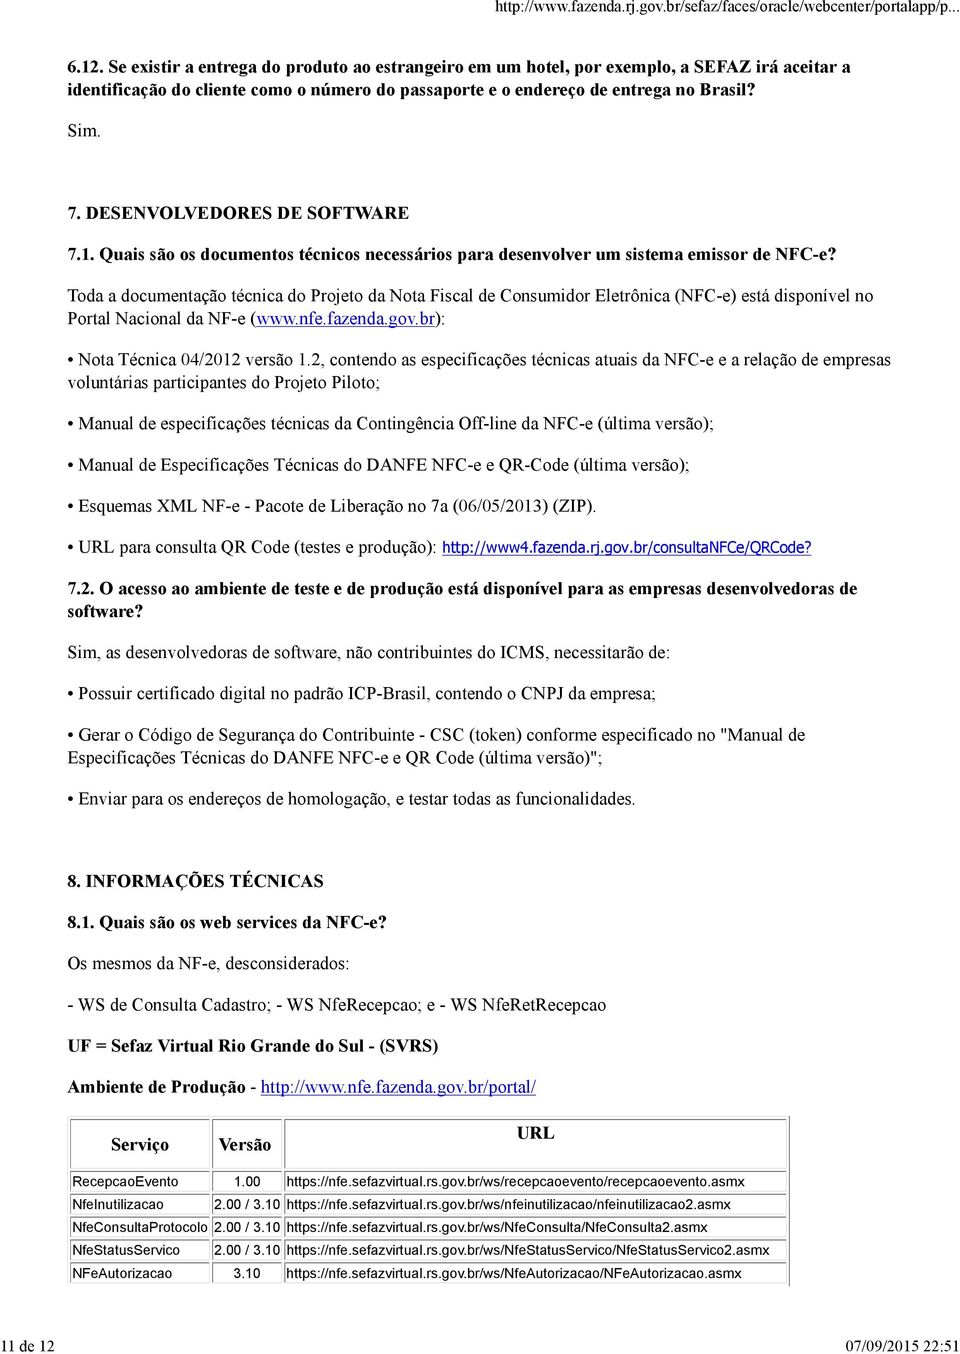 Toda a documentação técnica do Projeto da Nota Fiscal de Consumidor Eletrônica (NFC-e) está disponível no Portal Nacional da NF-e (www.nfe.fazenda.gov.br): Nota Técnica 04/2012 versão 1.